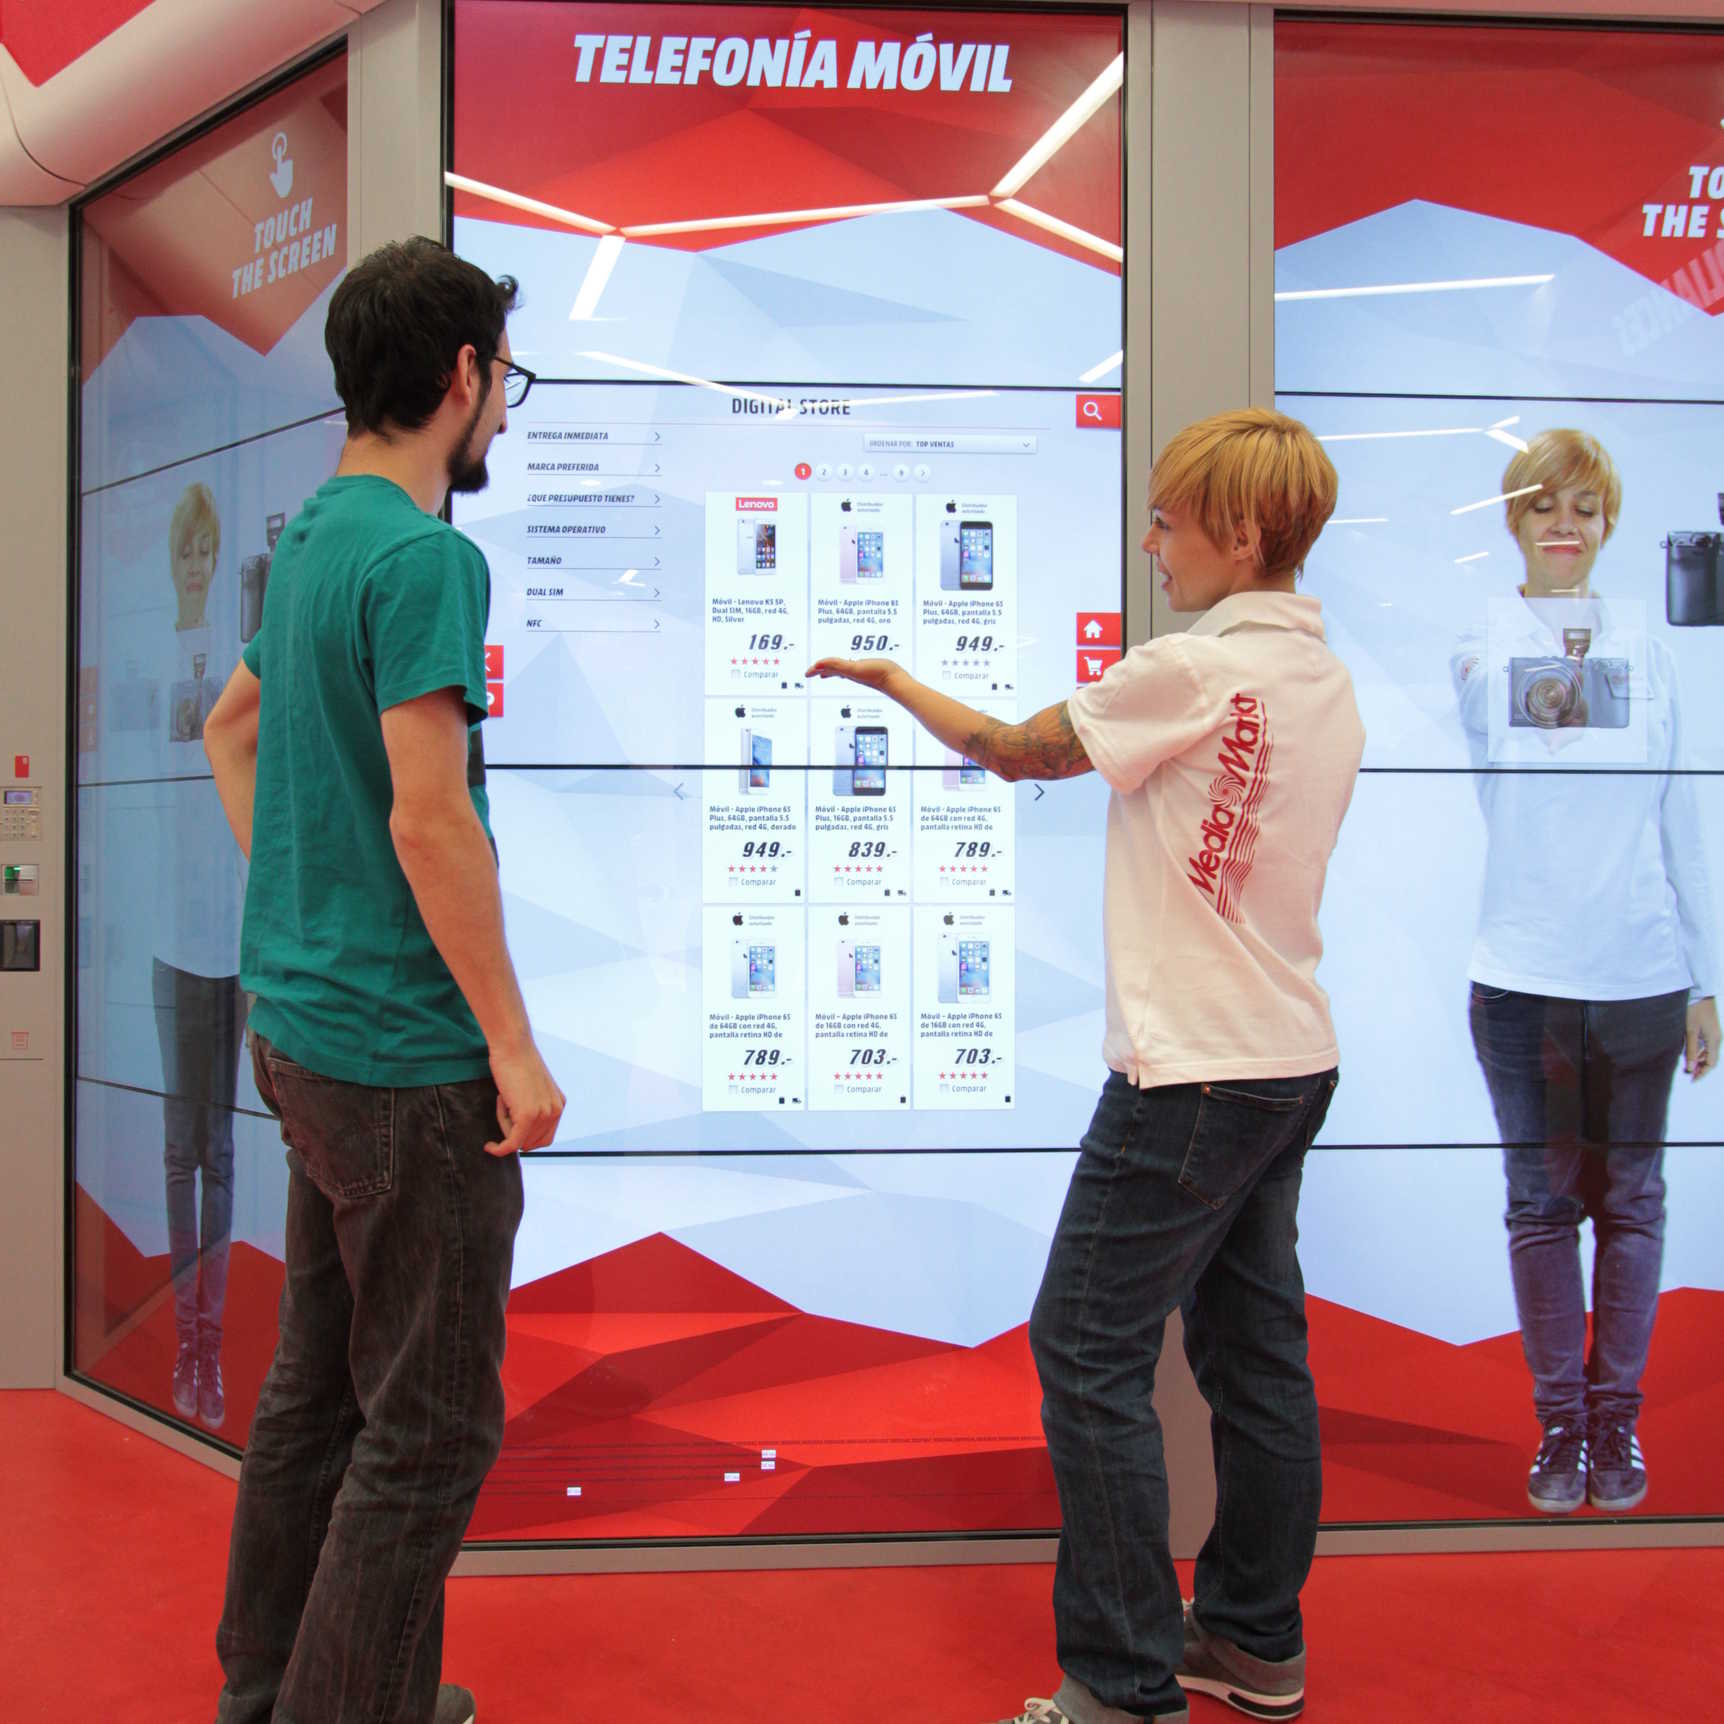 ¿Cómo es la experiencia de compra en Media Markt Digital Store?